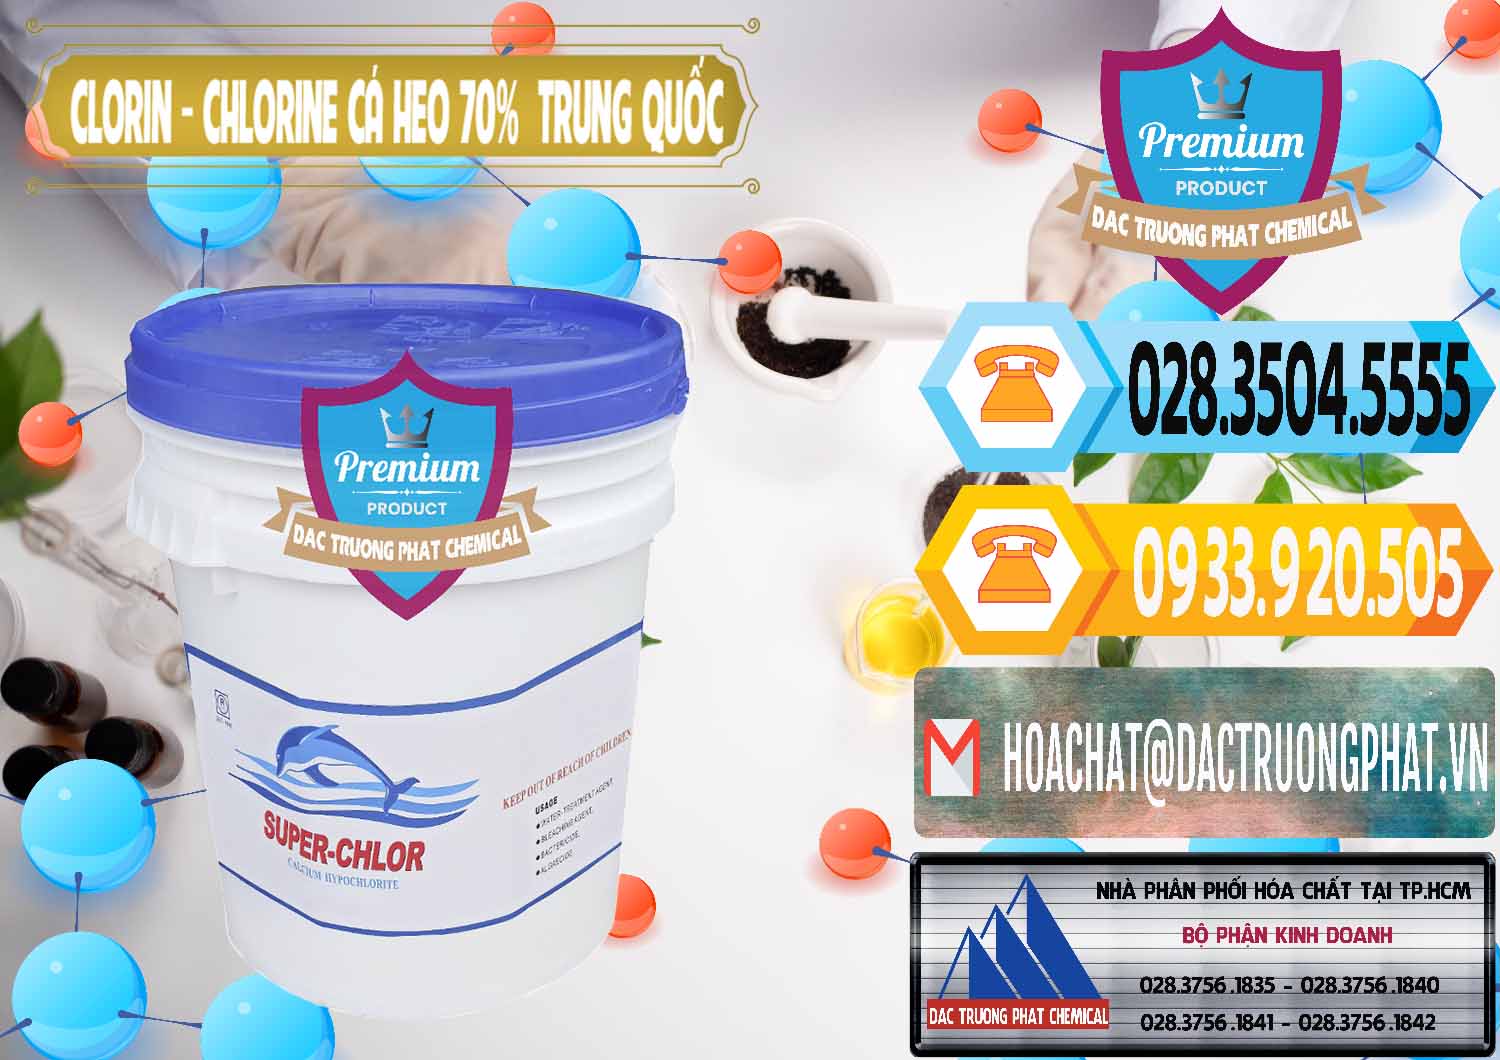 Nơi chuyên bán và phân phối Clorin - Chlorine Cá Heo 70% Super Chlor Nắp Xanh Trung Quốc China - 0209 - Nơi chuyên phân phối - kinh doanh hóa chất tại TP.HCM - hoachattayrua.net